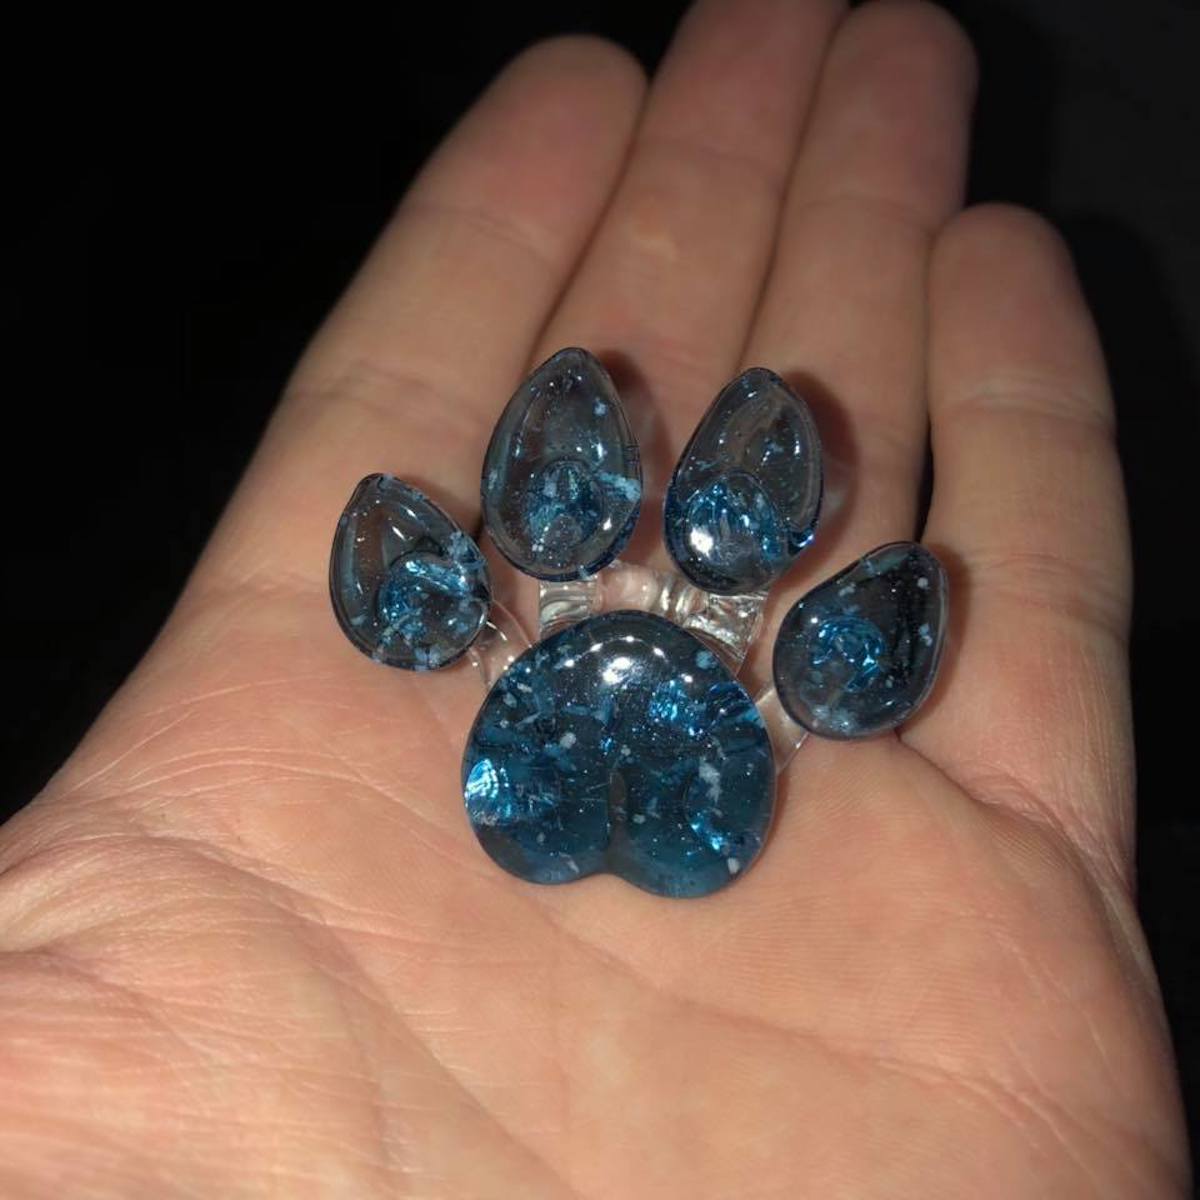 Davenport Memorial Glass transforme les cendres de votre chat en pendentif #4